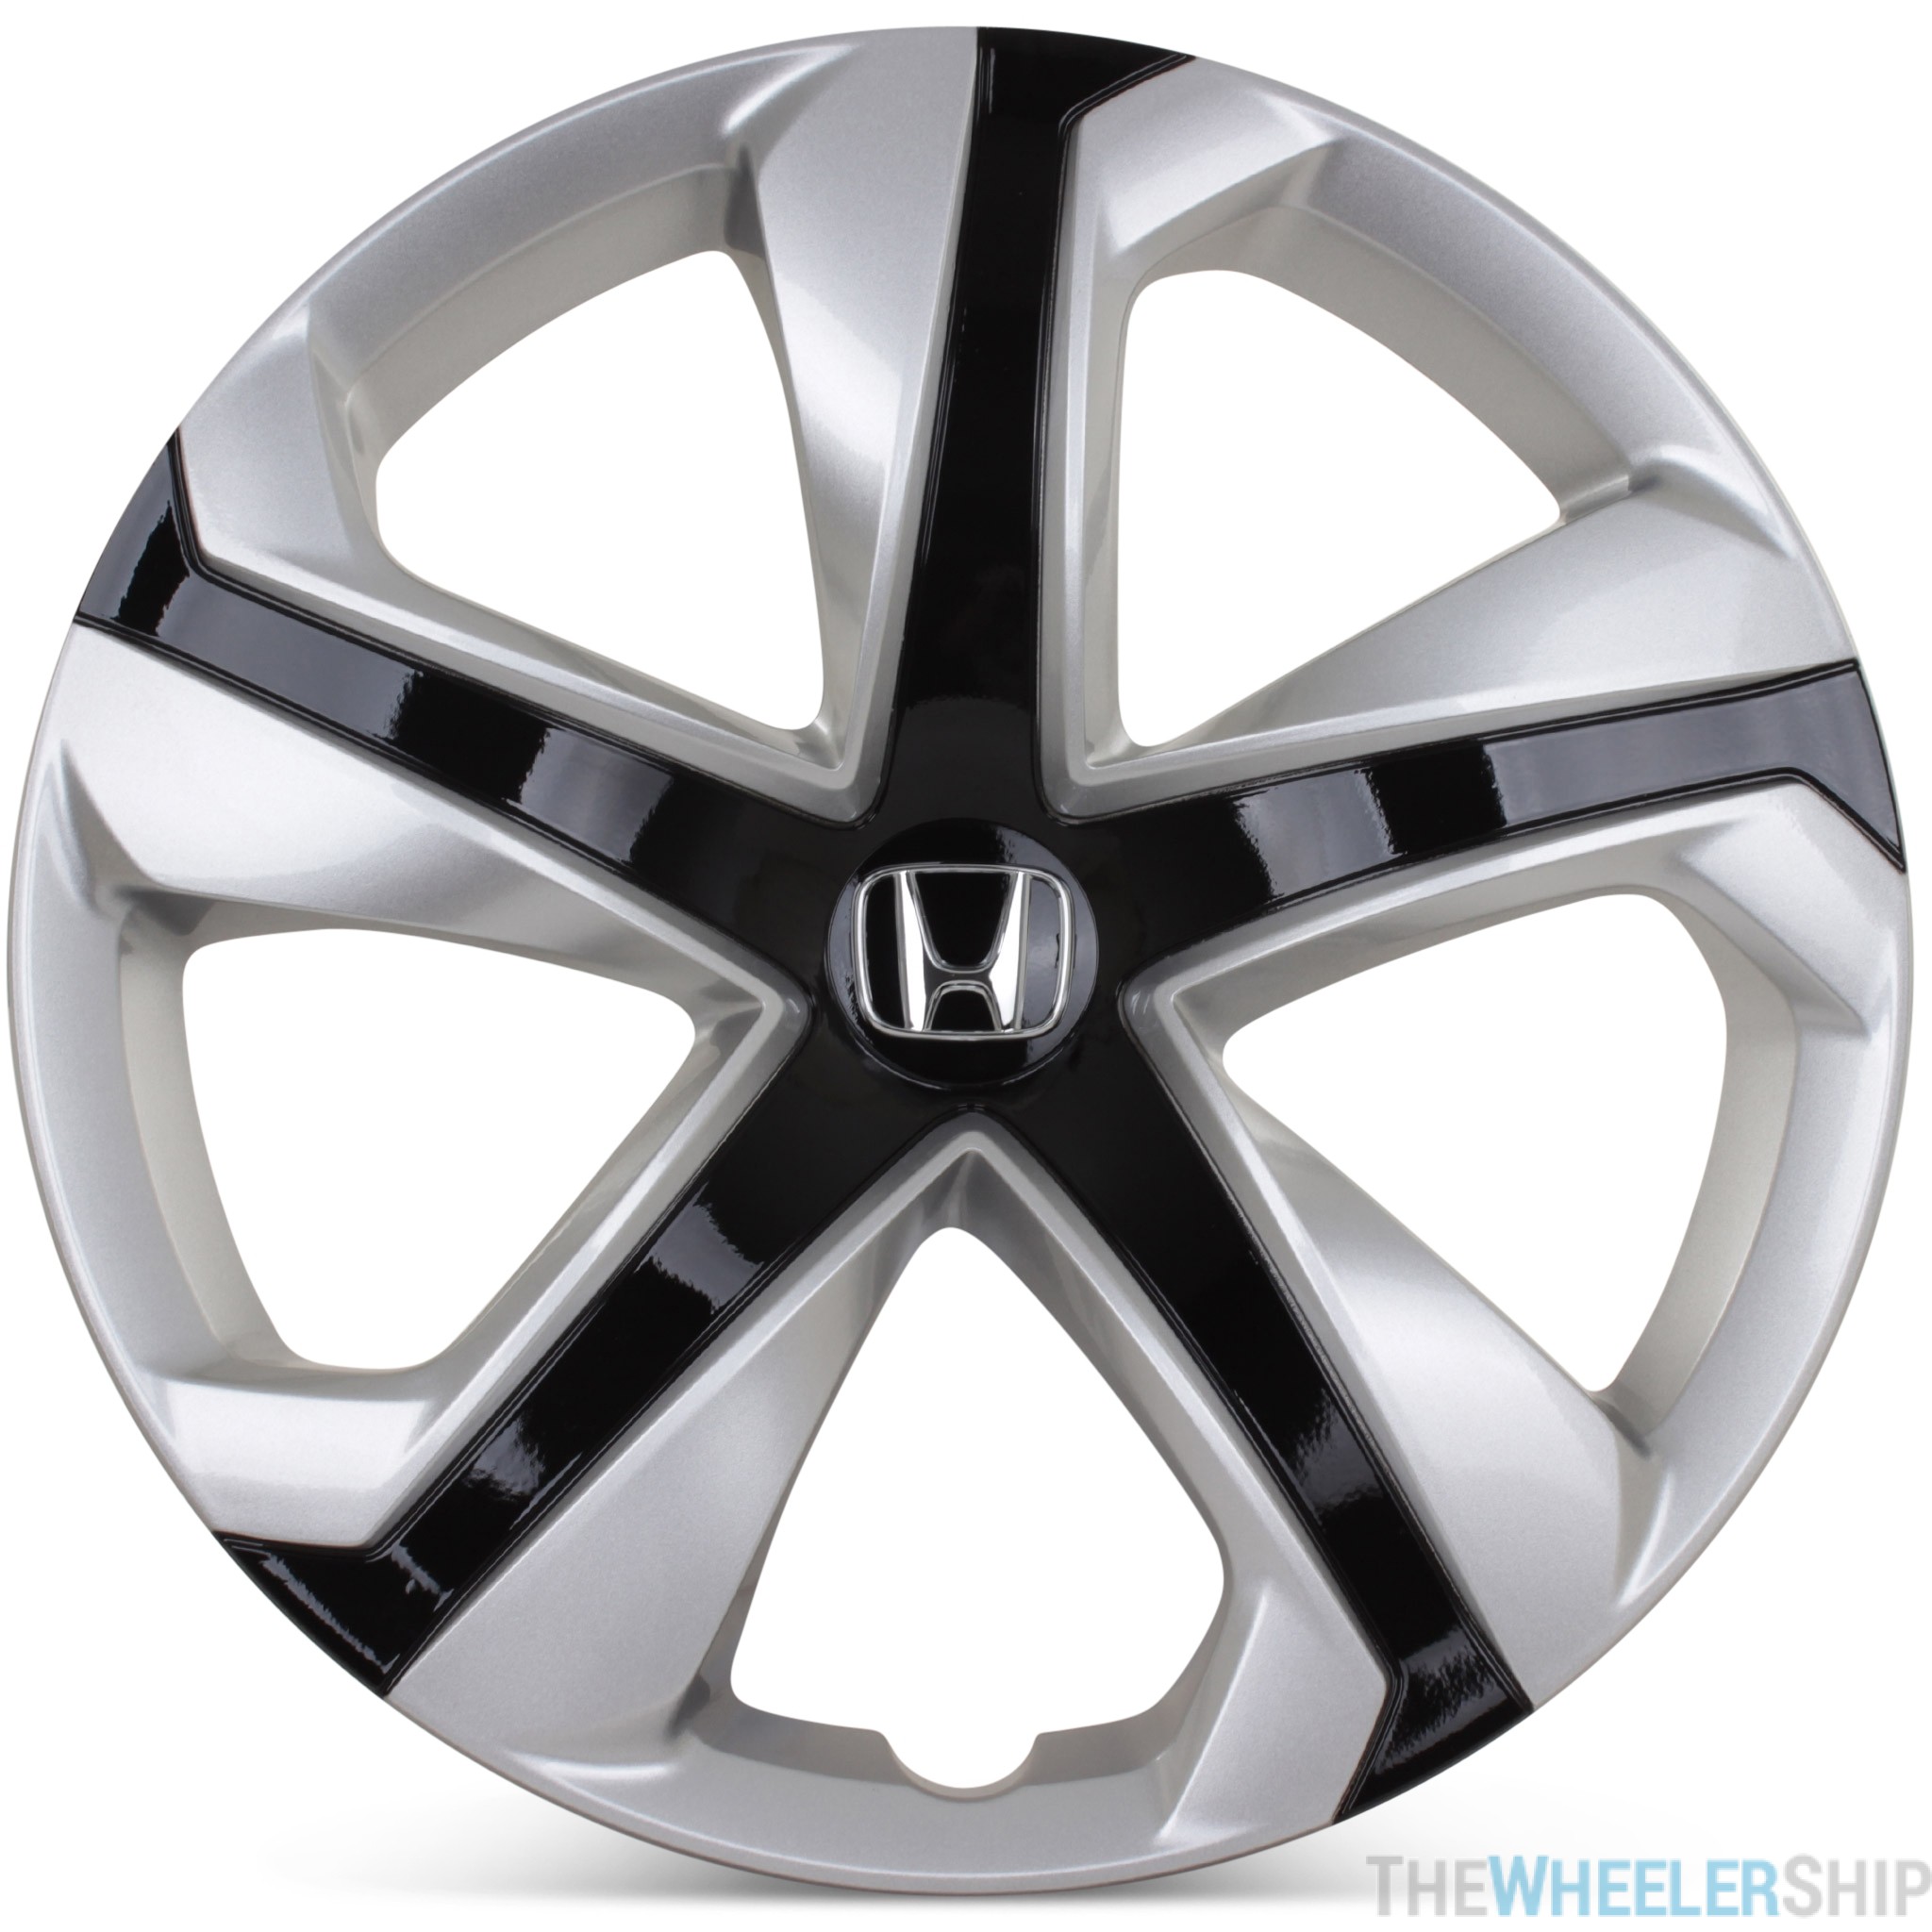 honda replacement hubcaps